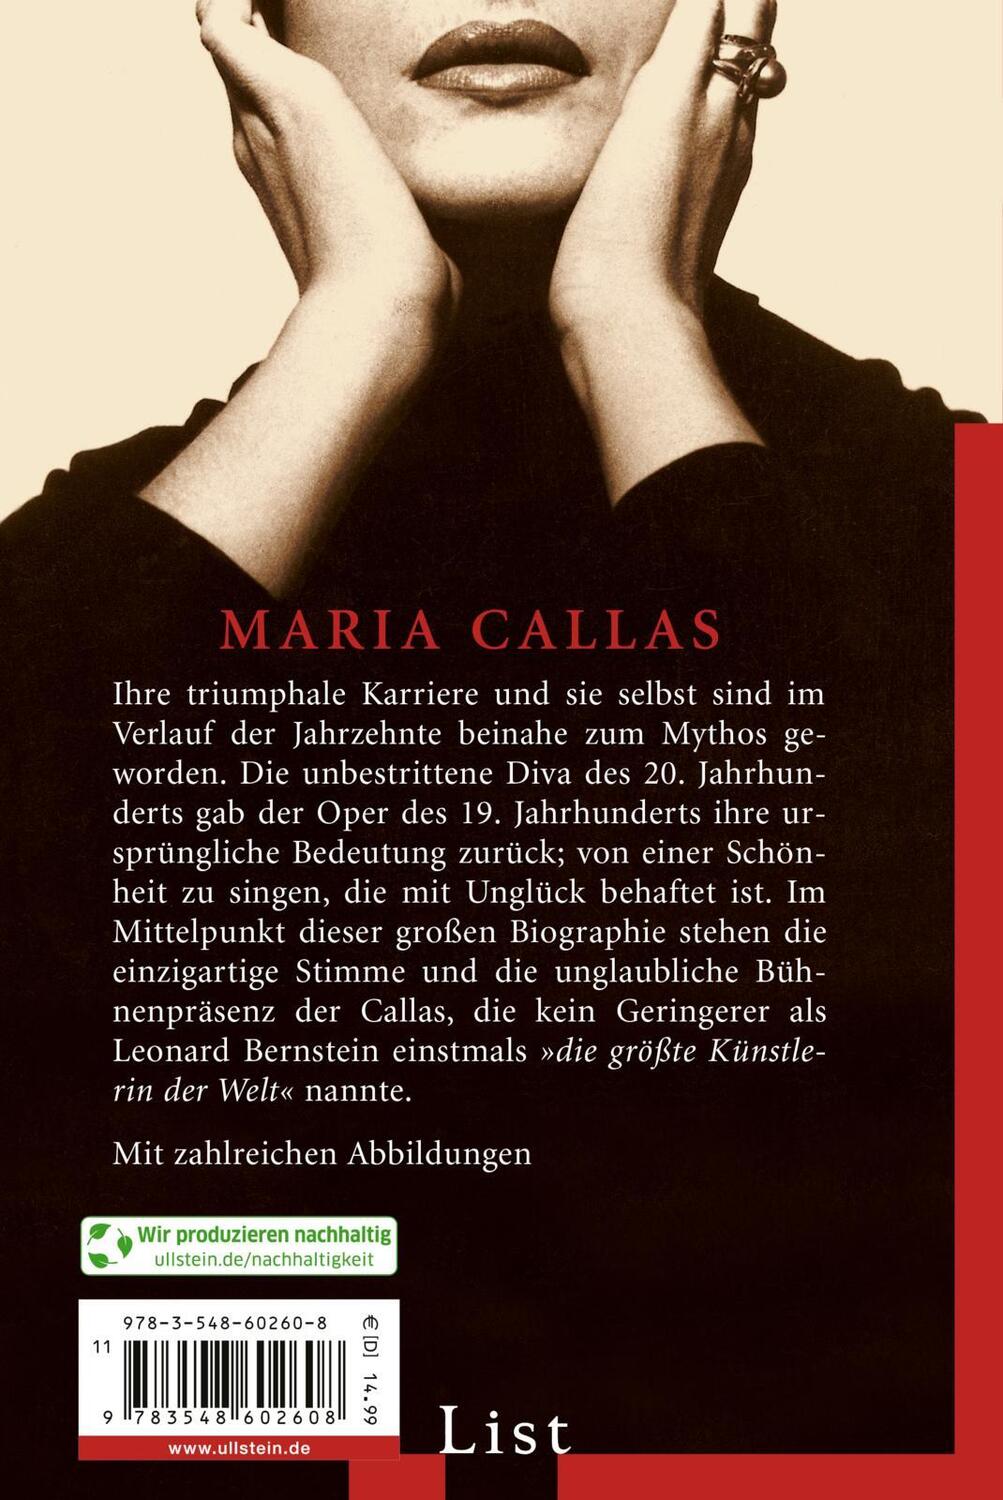 Rückseite: 9783548602608 | Maria Callas | Jürgen Kesting | Taschenbuch | List bei Ullstein | 2023